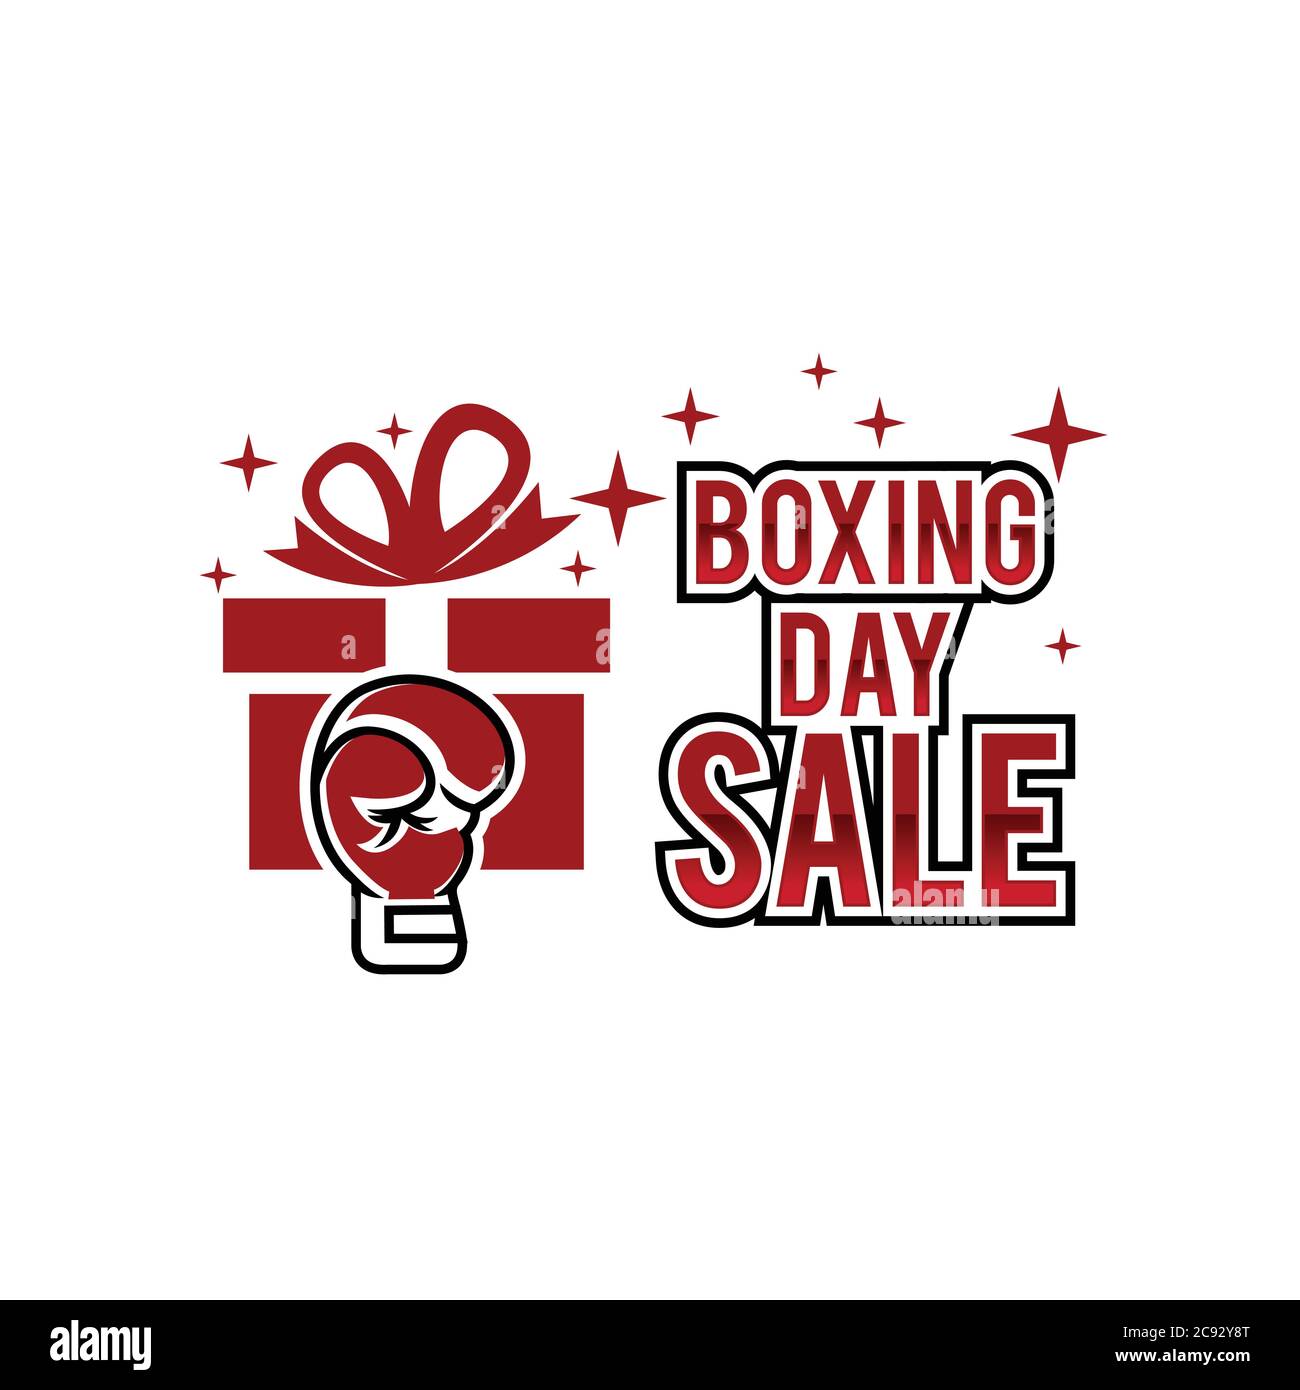 Kreative, oben flach Förderung Zusammensetzung Boxing Day verkauf Text auf Lightbox weißen Hintergrund Kopie Raum Vorlage Boxing Day Verkauf mockup Winter c Stock Vektor